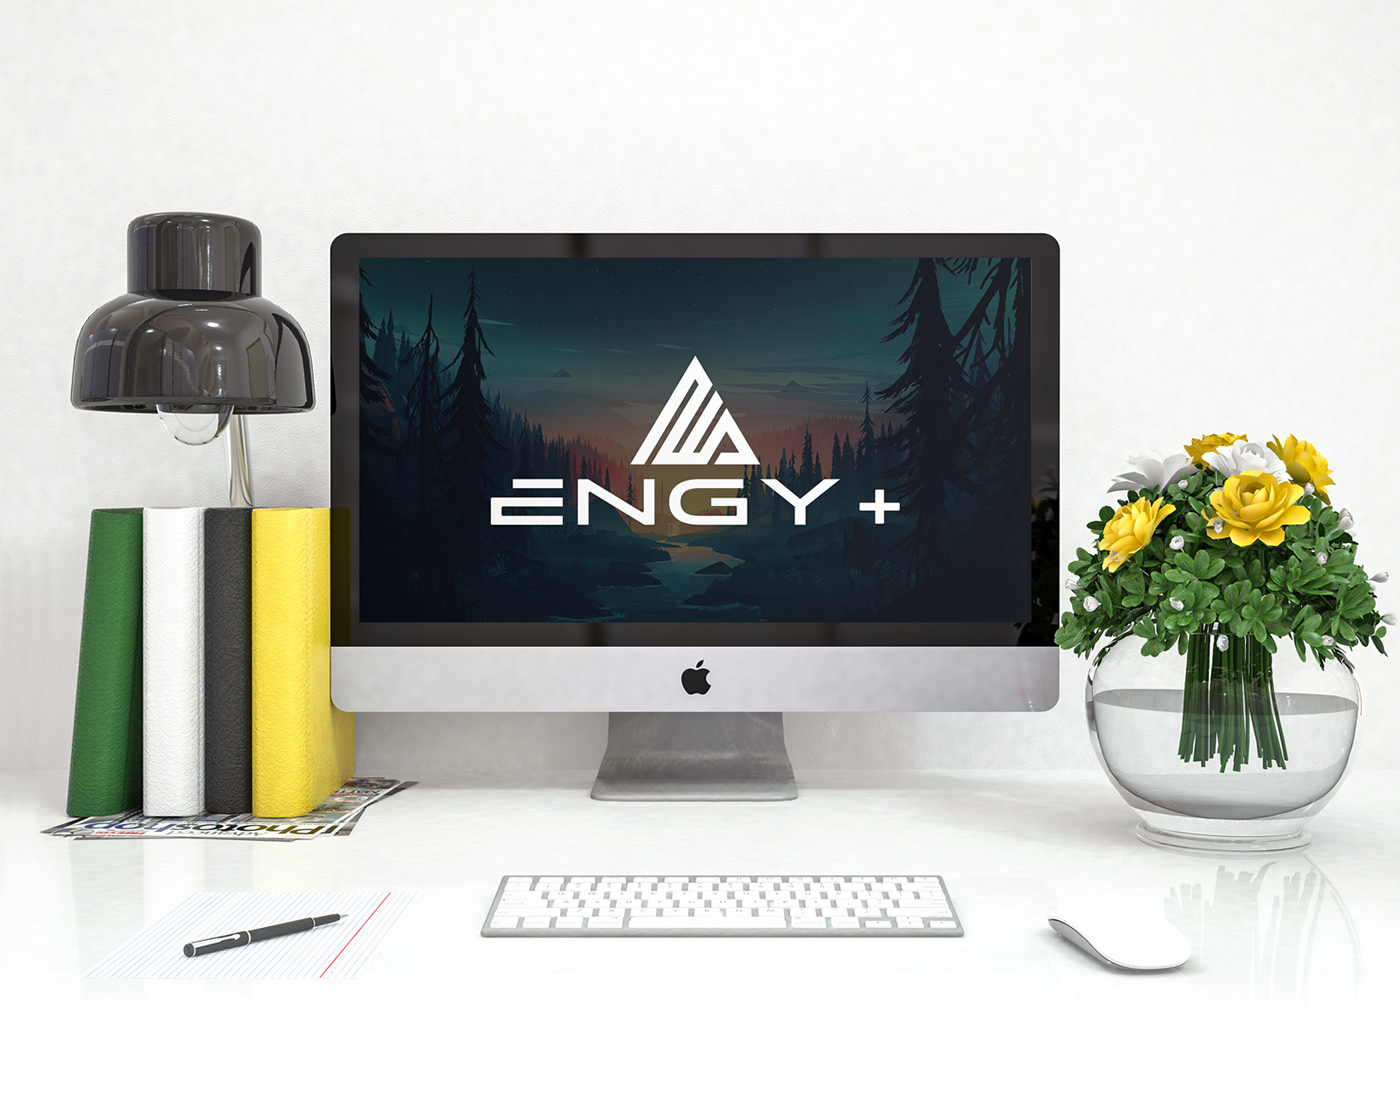 E logo Engy+ branding  graphics design logo Logo Design website logo